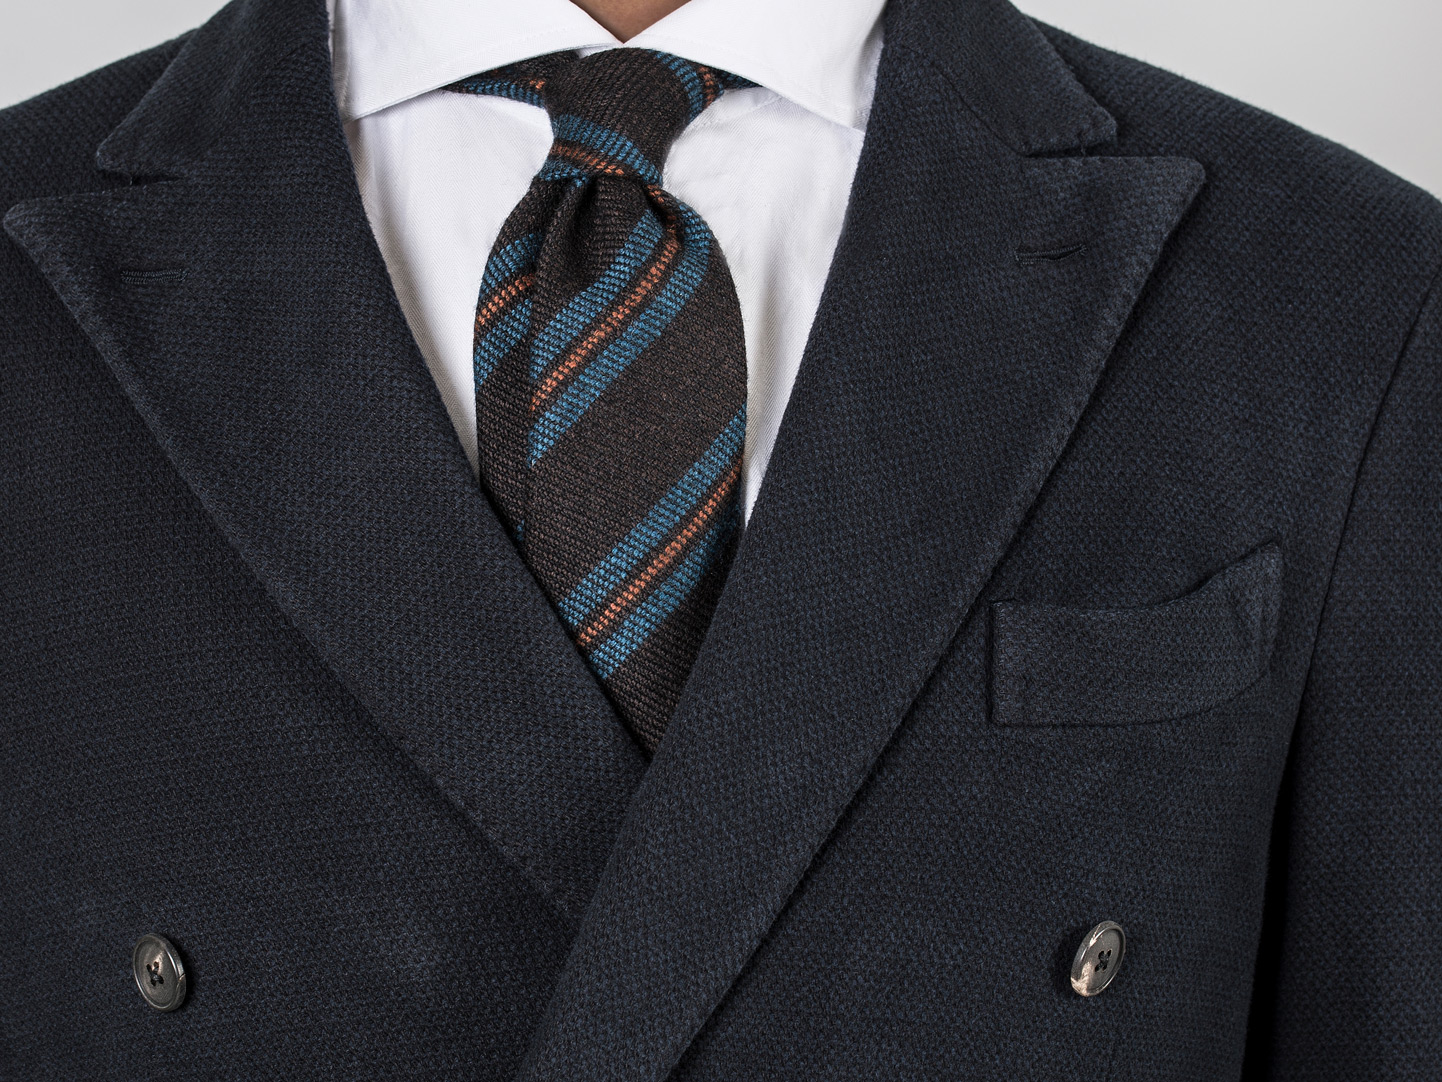 Hva utmerker et perfekt knytt slips?